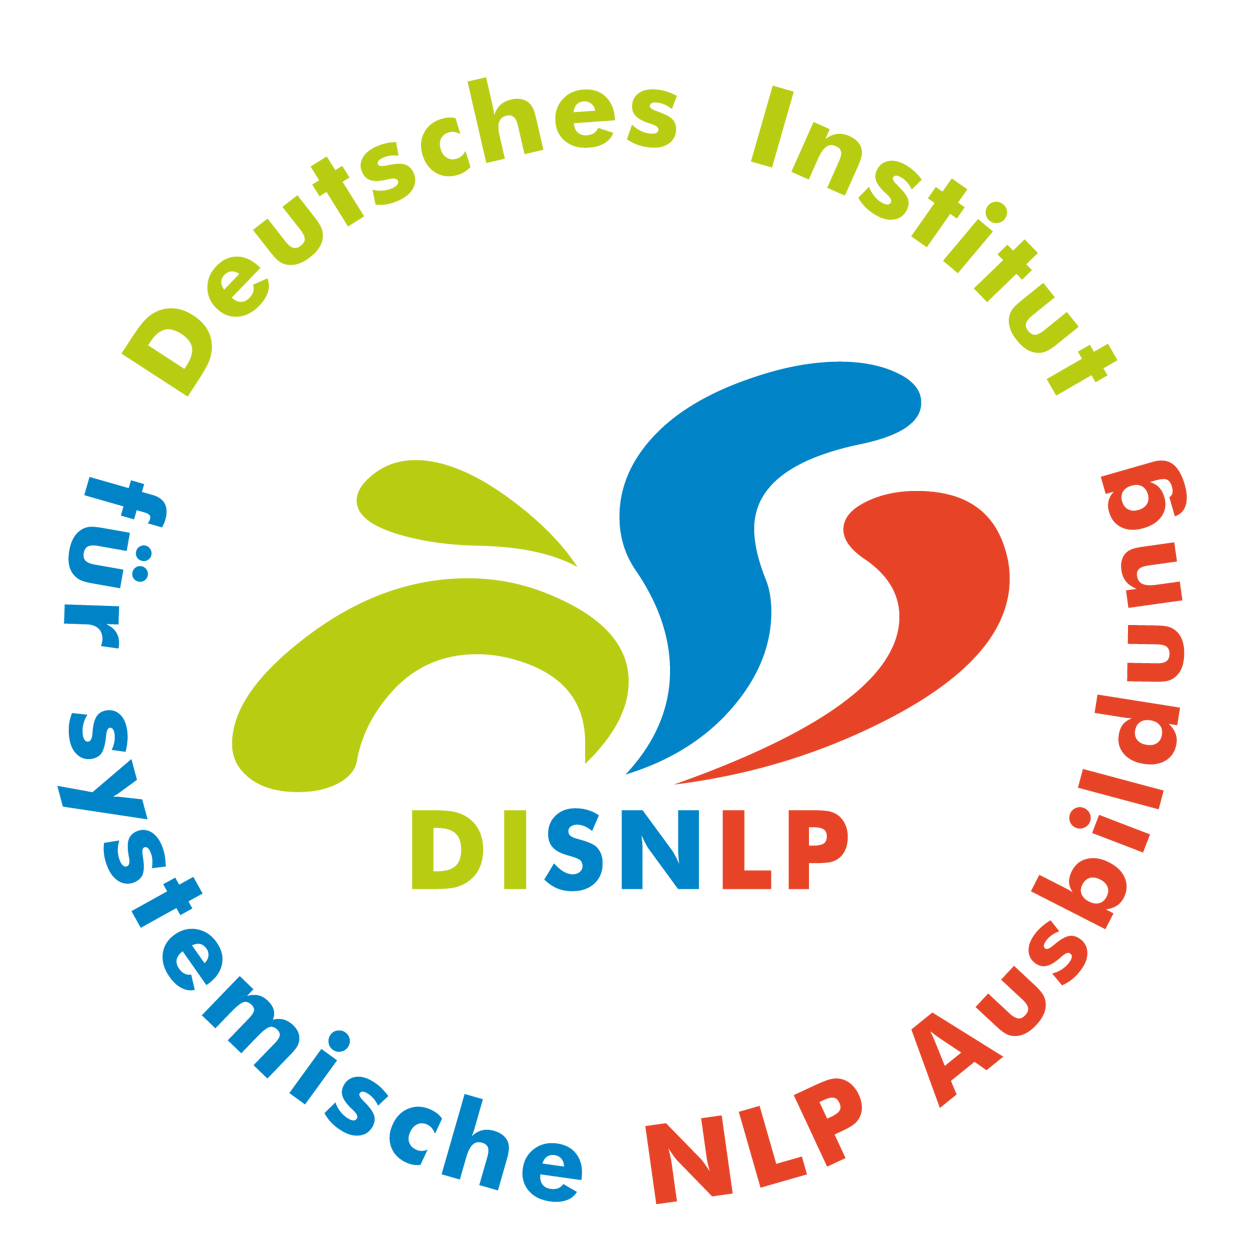 Seminar Selbstbewusstsein stärken Bensheim für mehr Selbstbewusstsein Bensheim, hohes Selbstbewusstsein erreichen mit NLP Bensheim